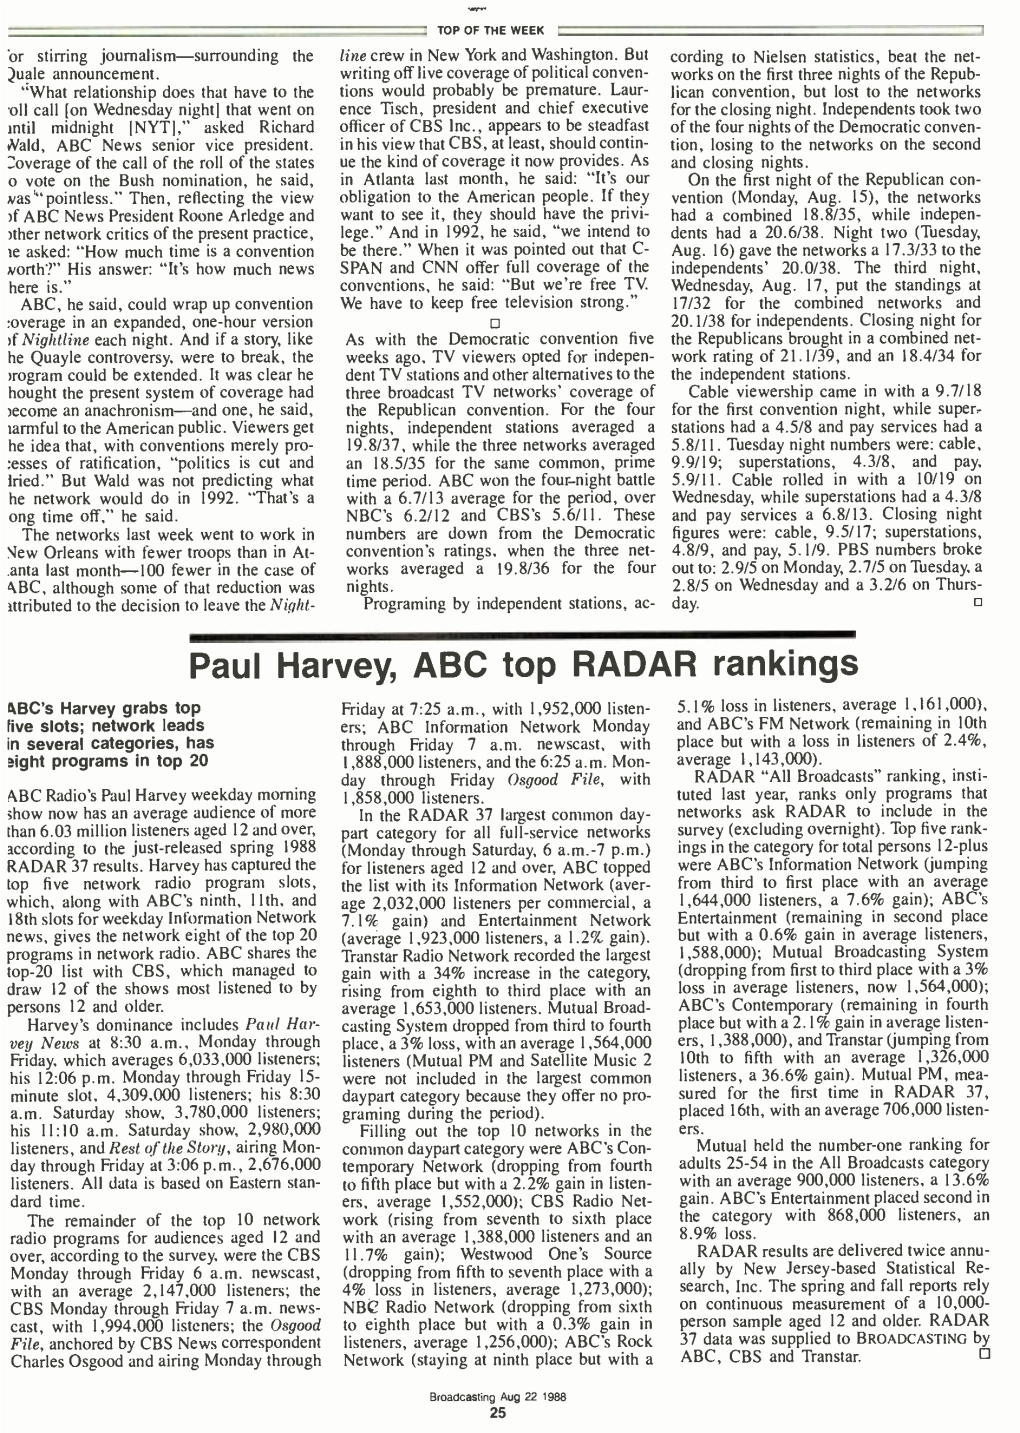 Paul Harvey, ABC Top RADAR Rankings